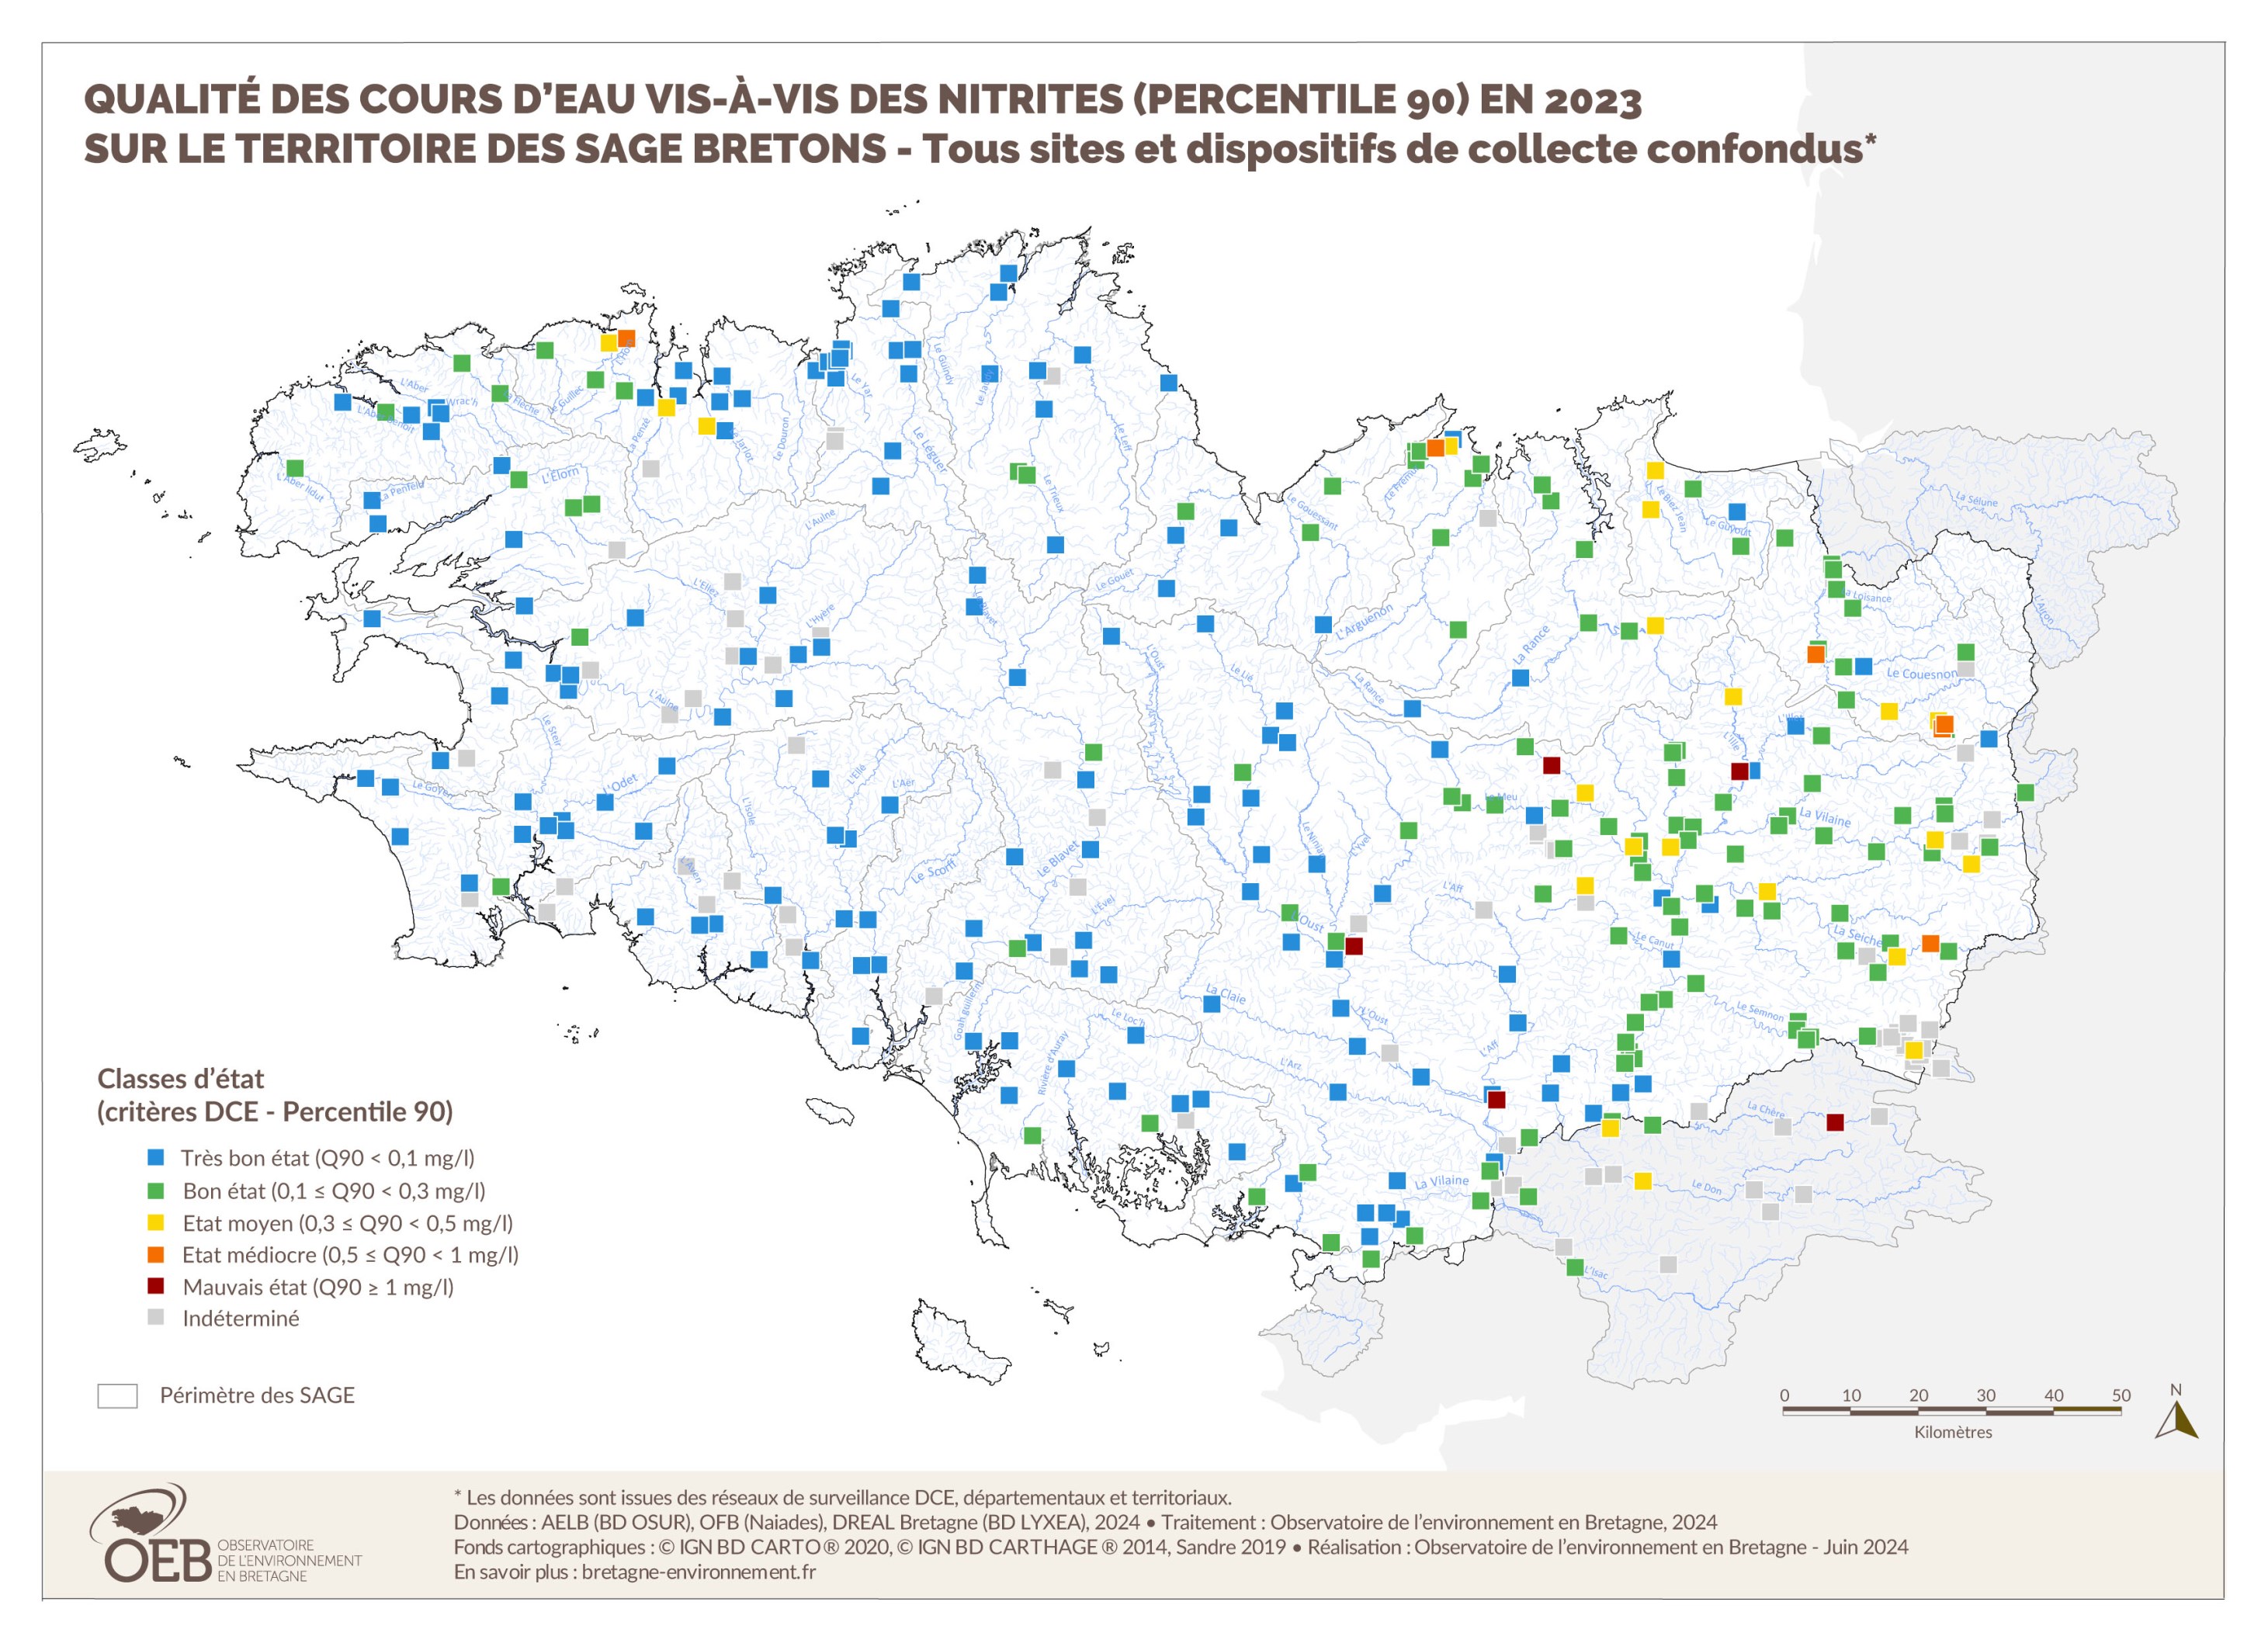 Qualité des cours d'eau bretons vis-à-vis des nitrites (Q90) en 2023